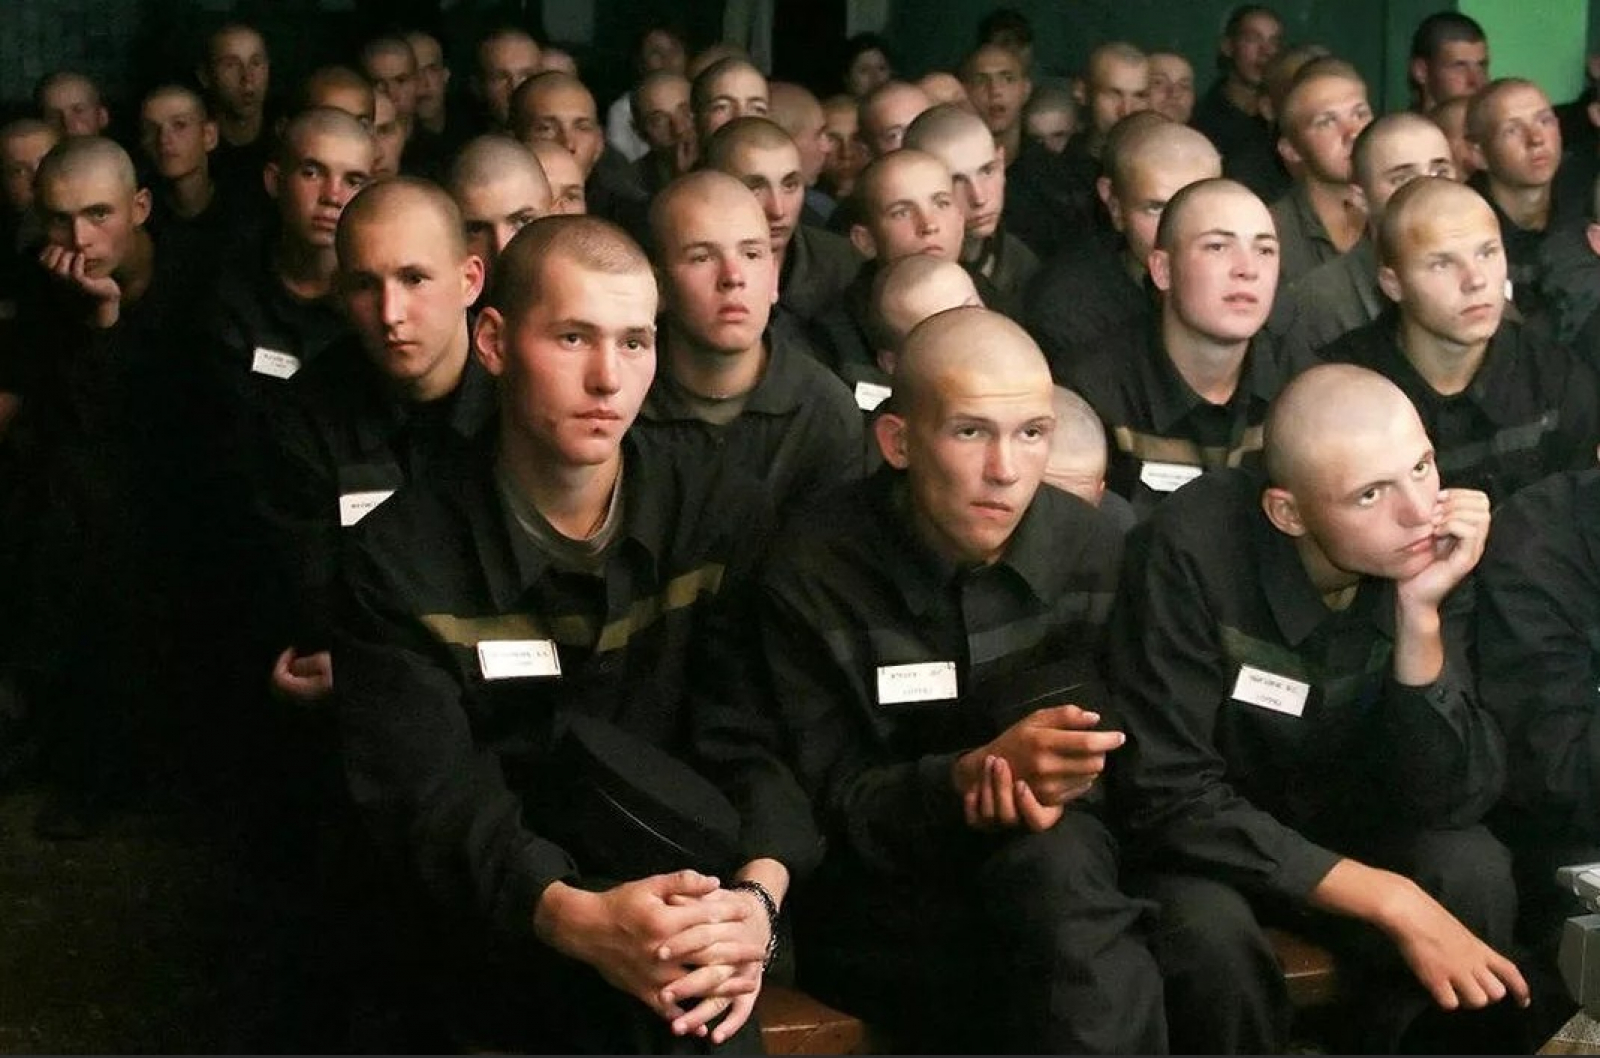 Включи 2 заключенных. Икшанская воспитательная колония для несовершеннолетних 2002 году. Воспитательные колонии для несовершеннолетних в России 2022 год. Заключенные в колонии.